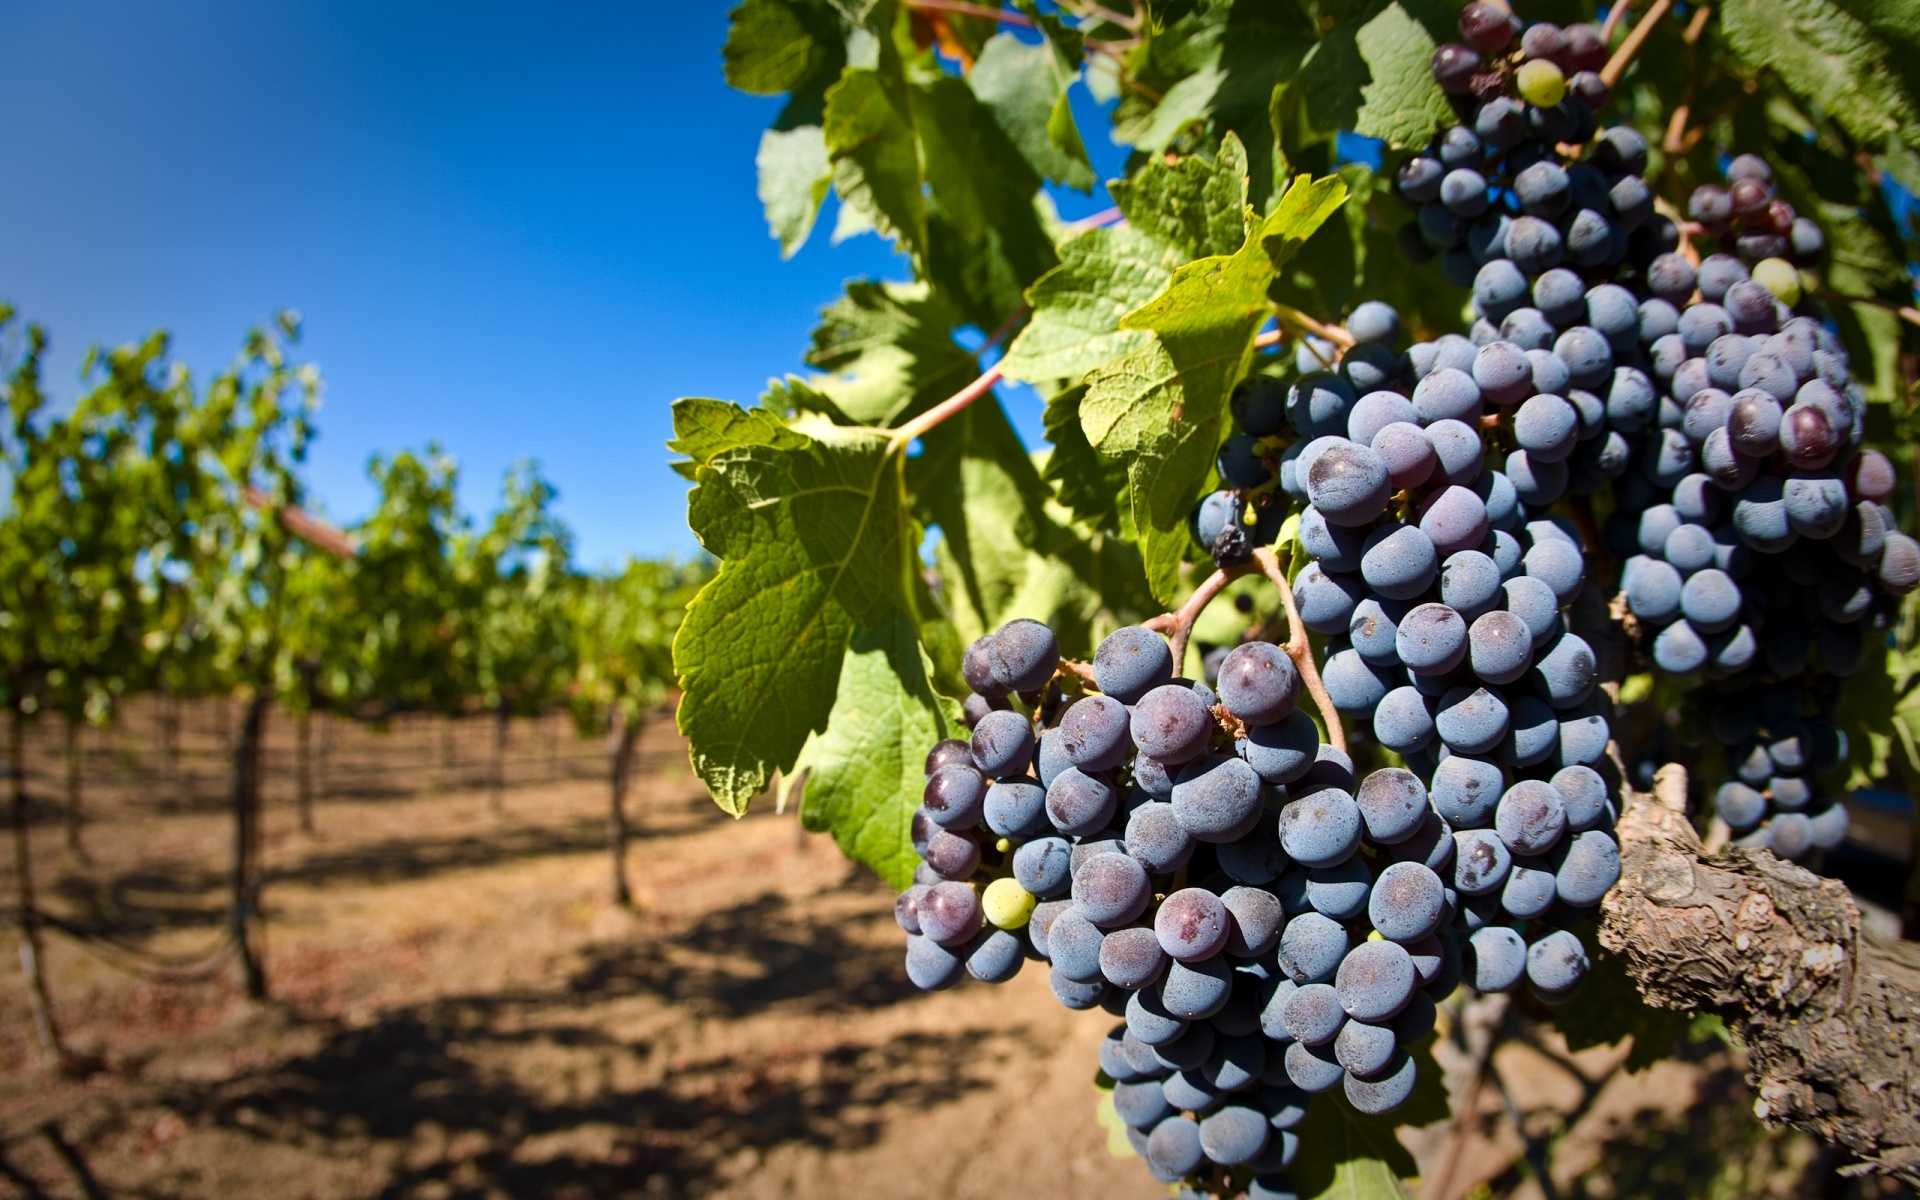 Виноделие во франции - основные этапы работ винодела при изготовлении вин